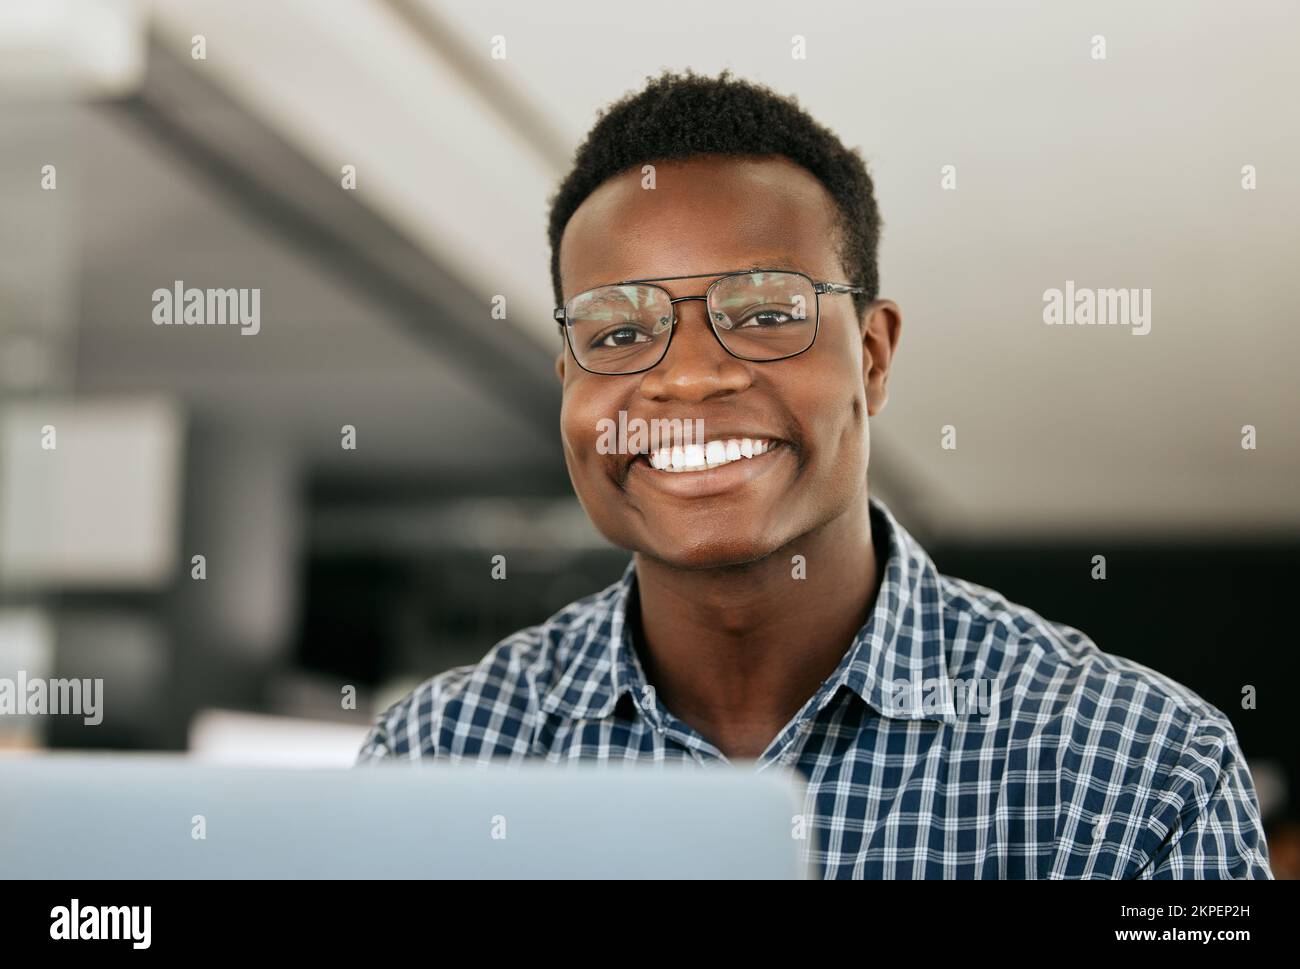 Portrait, ordinateur portable et support informatique avec un homme noir travaillant dans son bureau en tant qu'ingénieur ou technicien. Visage, heureux et sourire avec un nerd ou un geek au travail Banque D'Images